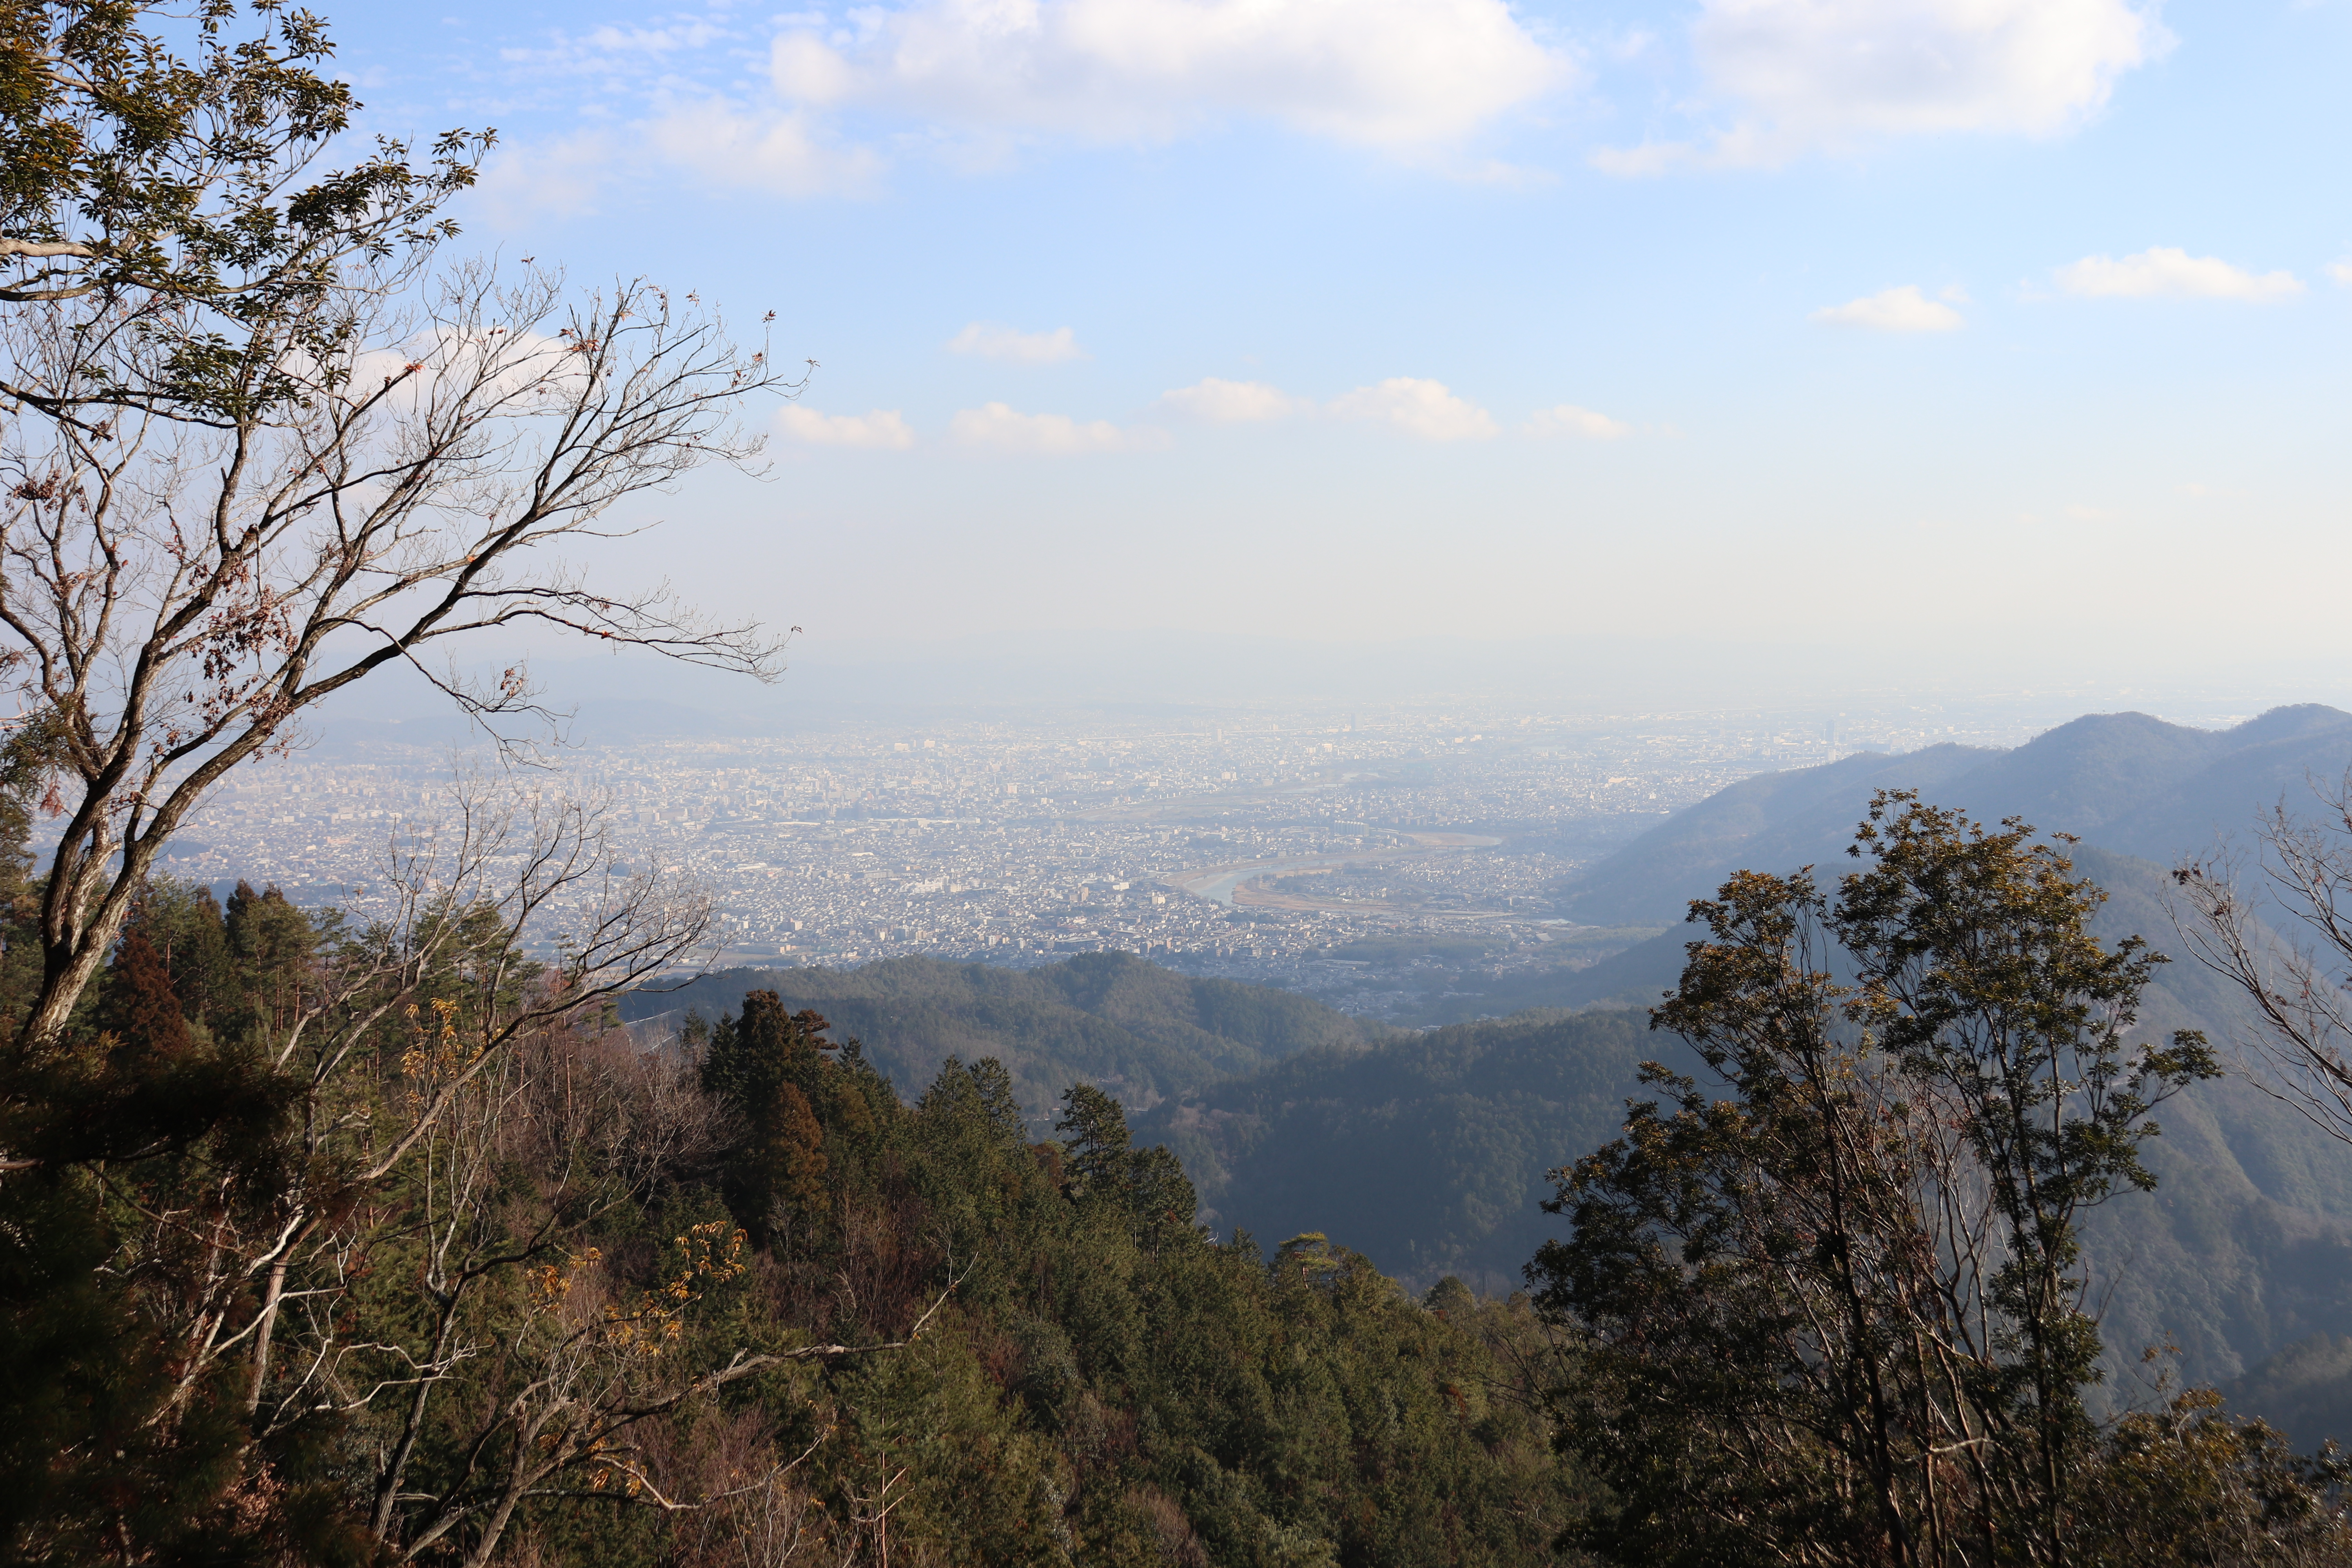 View of Arashiyama and the Katsura River from Mt. Atago